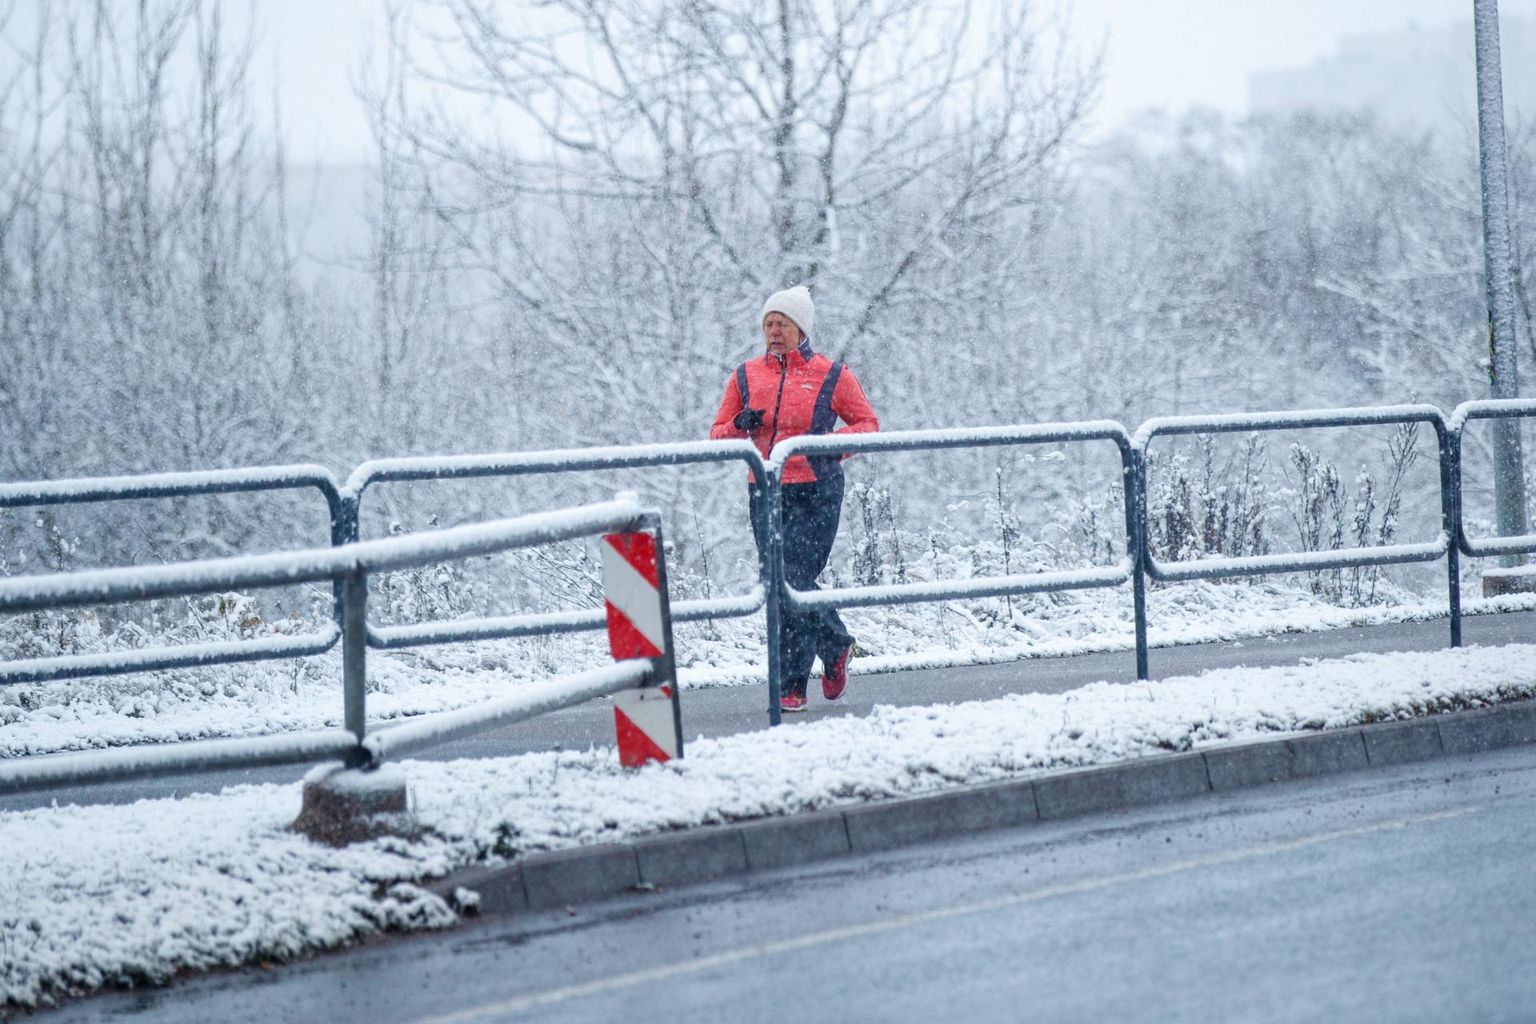 Esimene lumi sadas Tallinnas maha 17. novembril ja talverõõmude nautijaid ootavad ennustuse kohaselt ees head ajad.